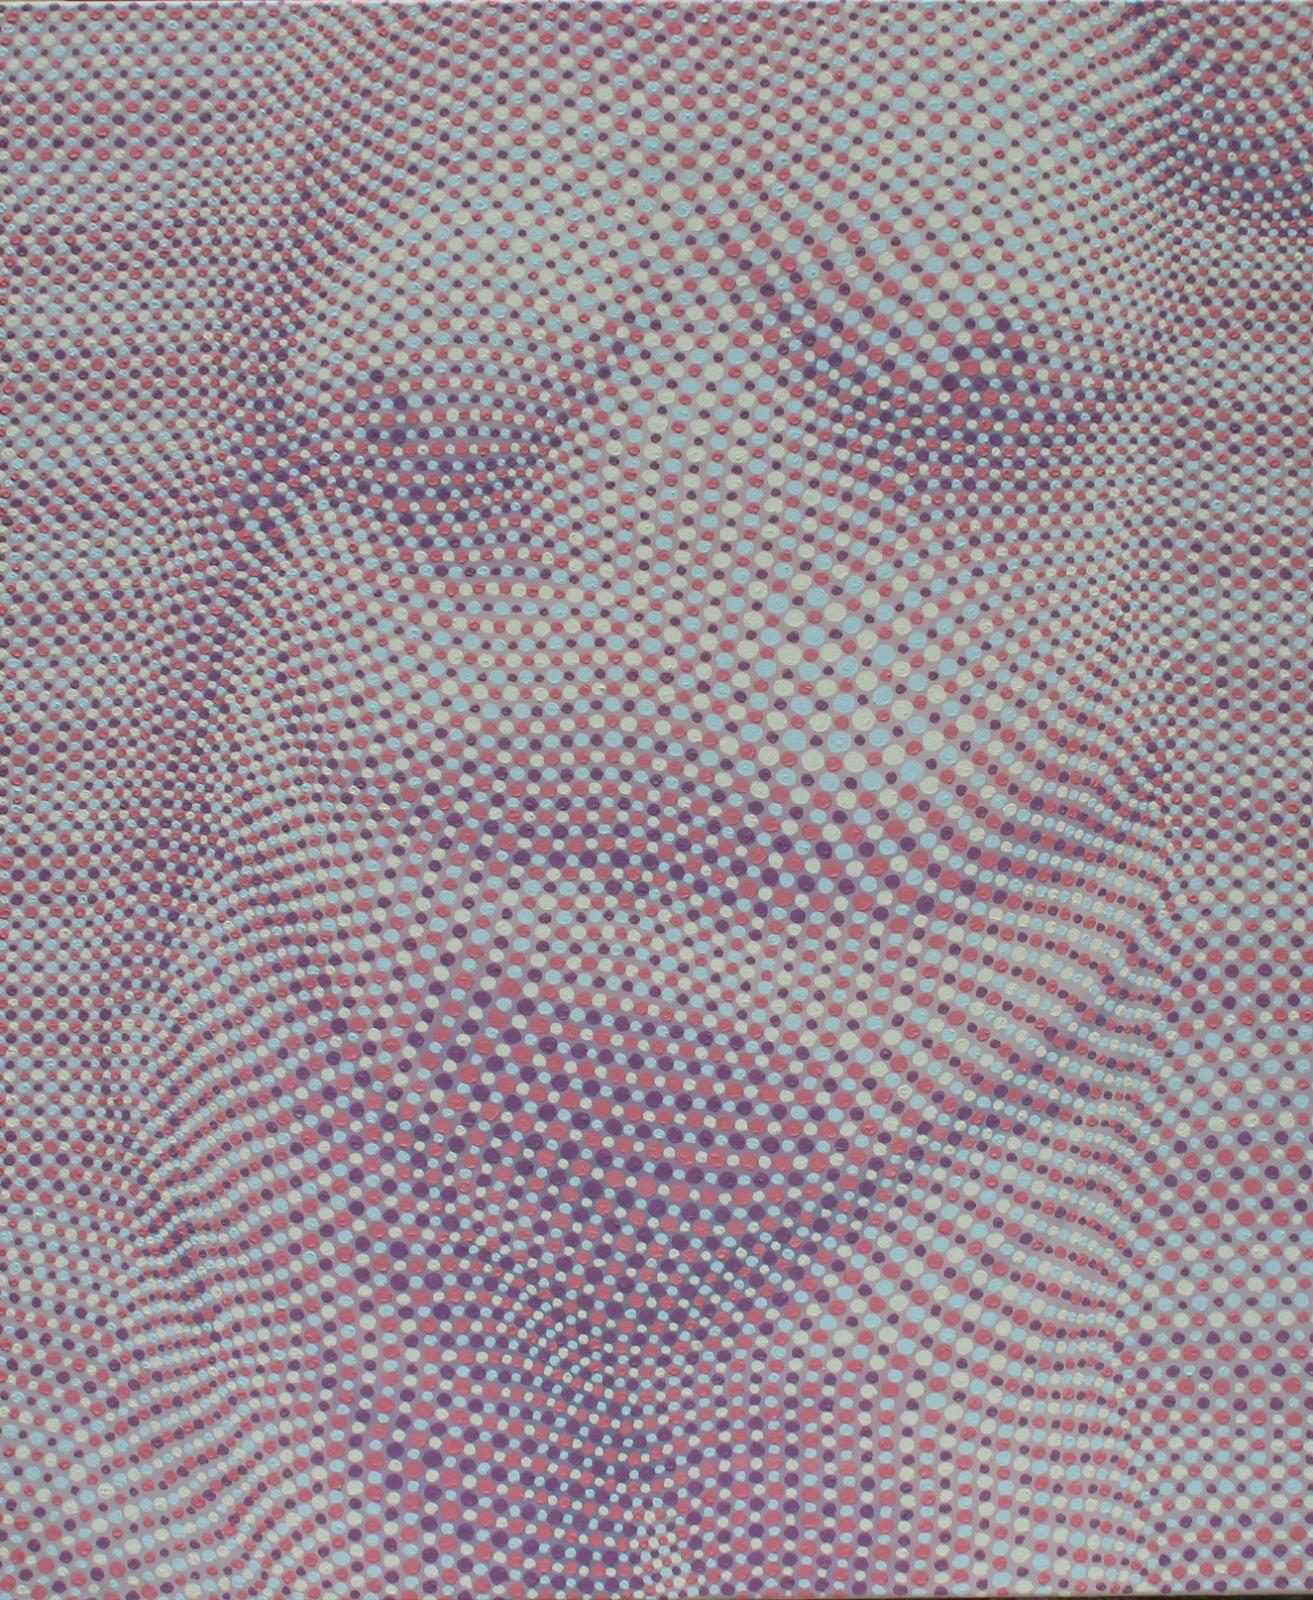 Andreas Lau, Halbakt, 2015, Eitempera auf Nessel, 120 x 100 cm, laa011kü, Preis auf Anfrage